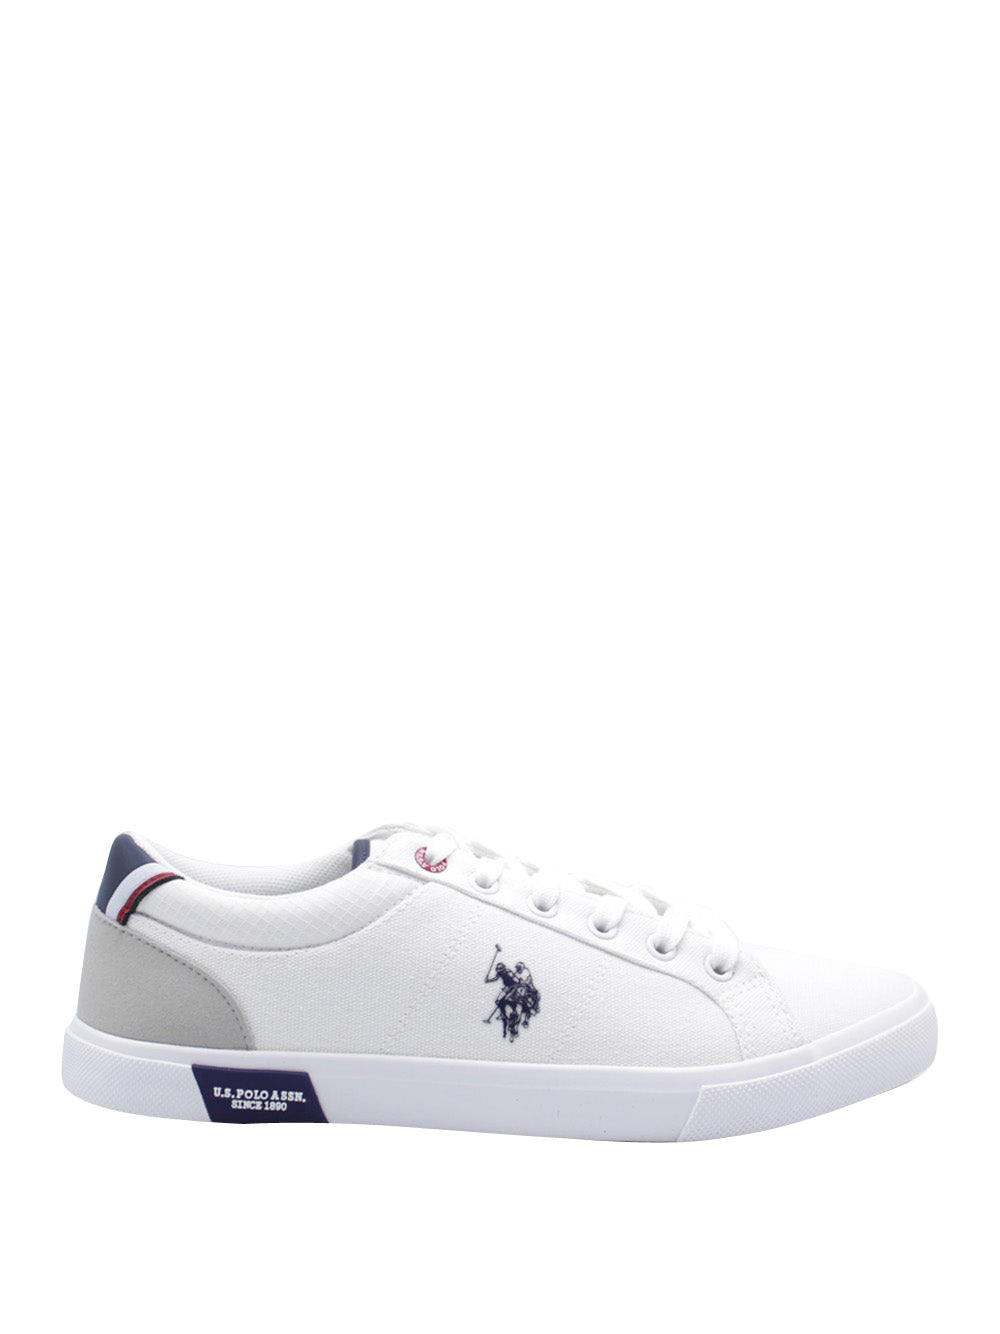 U.S. POLO ASSN. Sneakers Uomo - Bianco modello BASTER001A